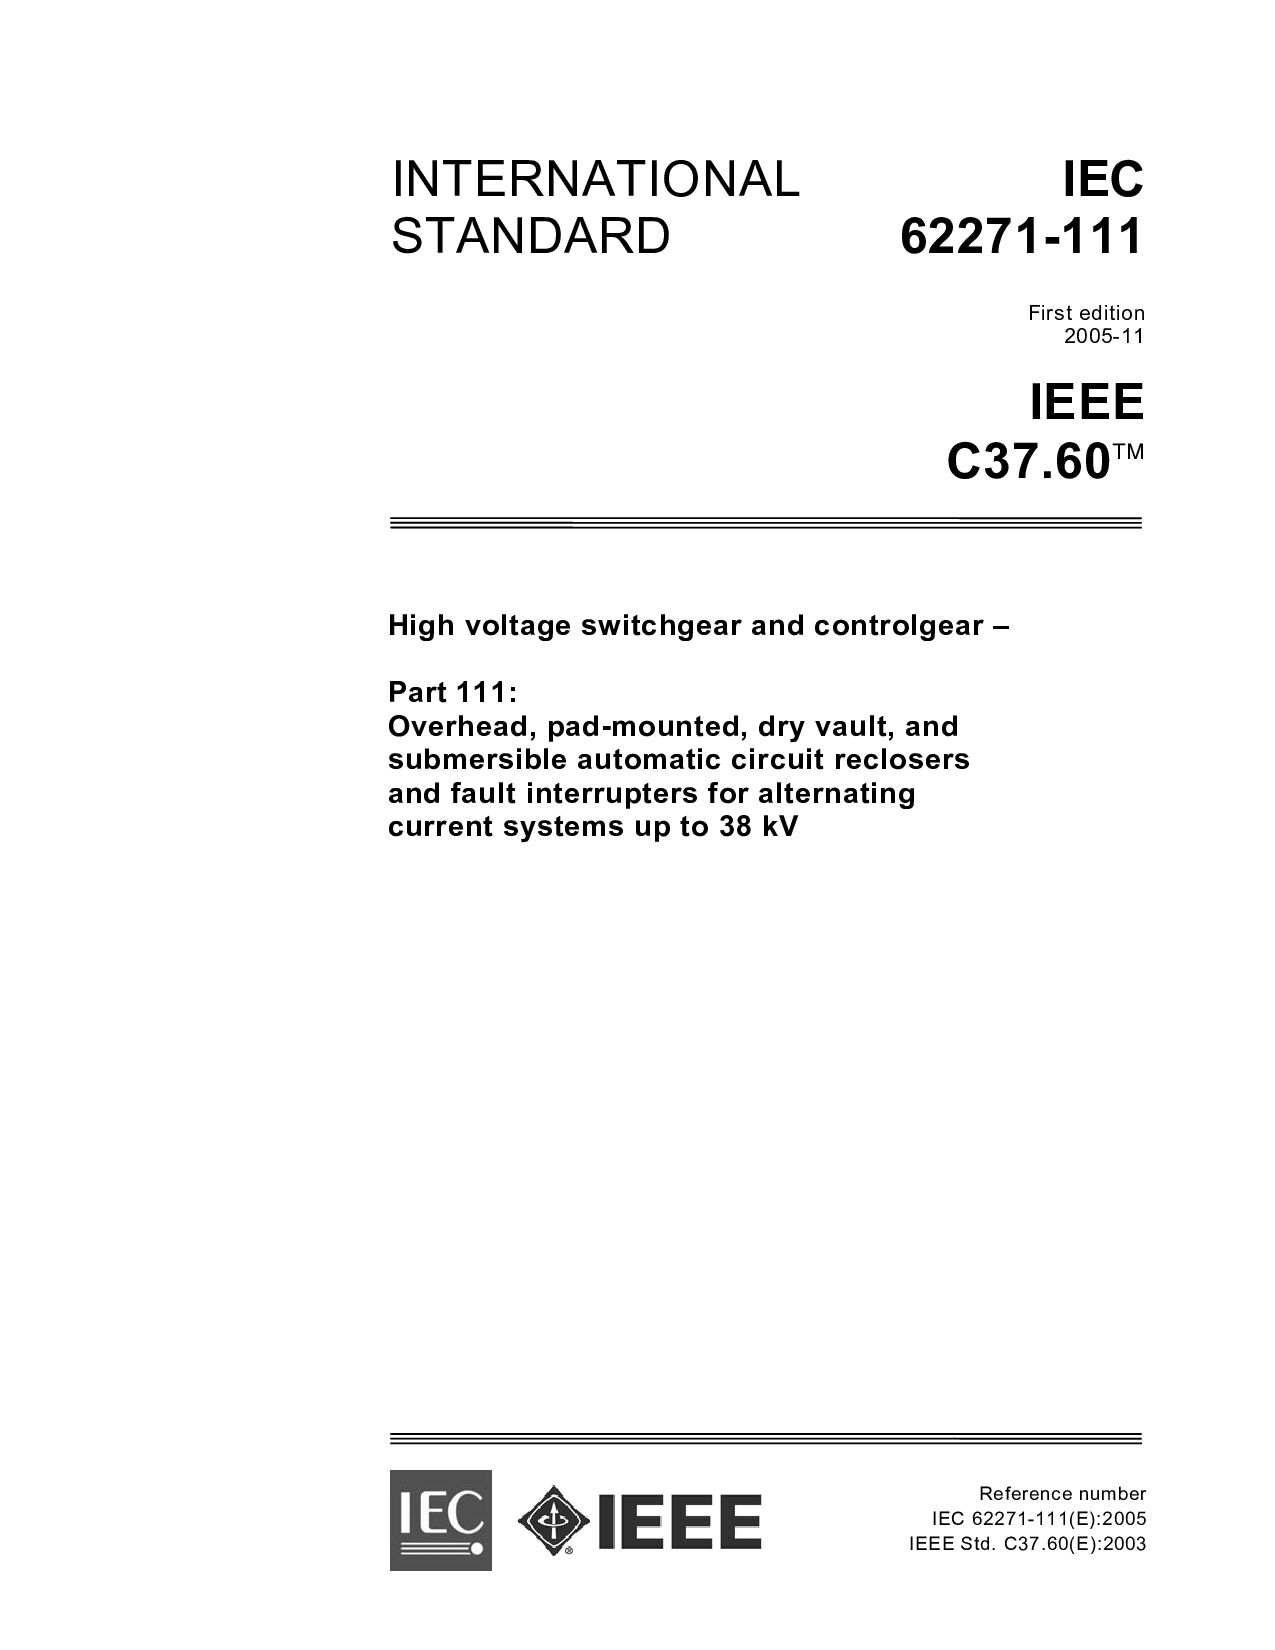 IEC 62271-111:2005